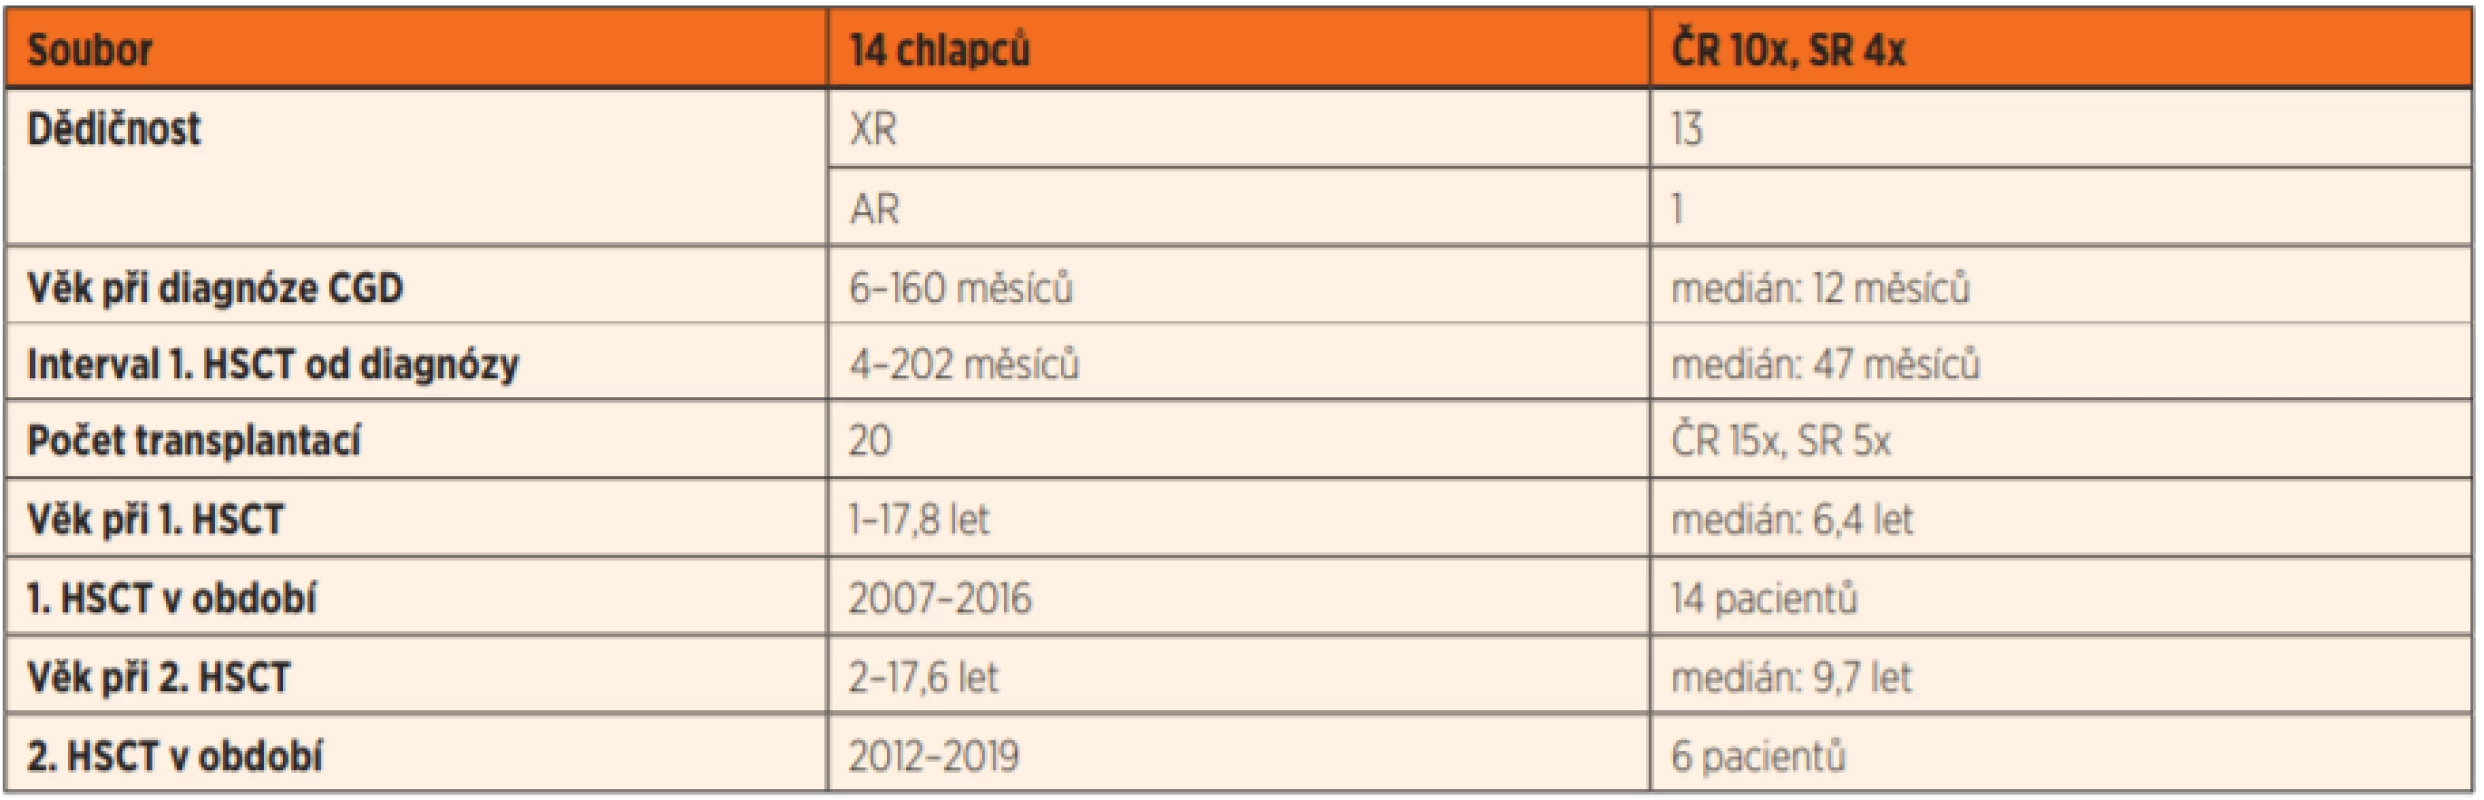 Charakteristika souboru dětských pacientů transplantovaných pro chronickou granulomatózu v České a Slovenské republice v letech
2007–2019.